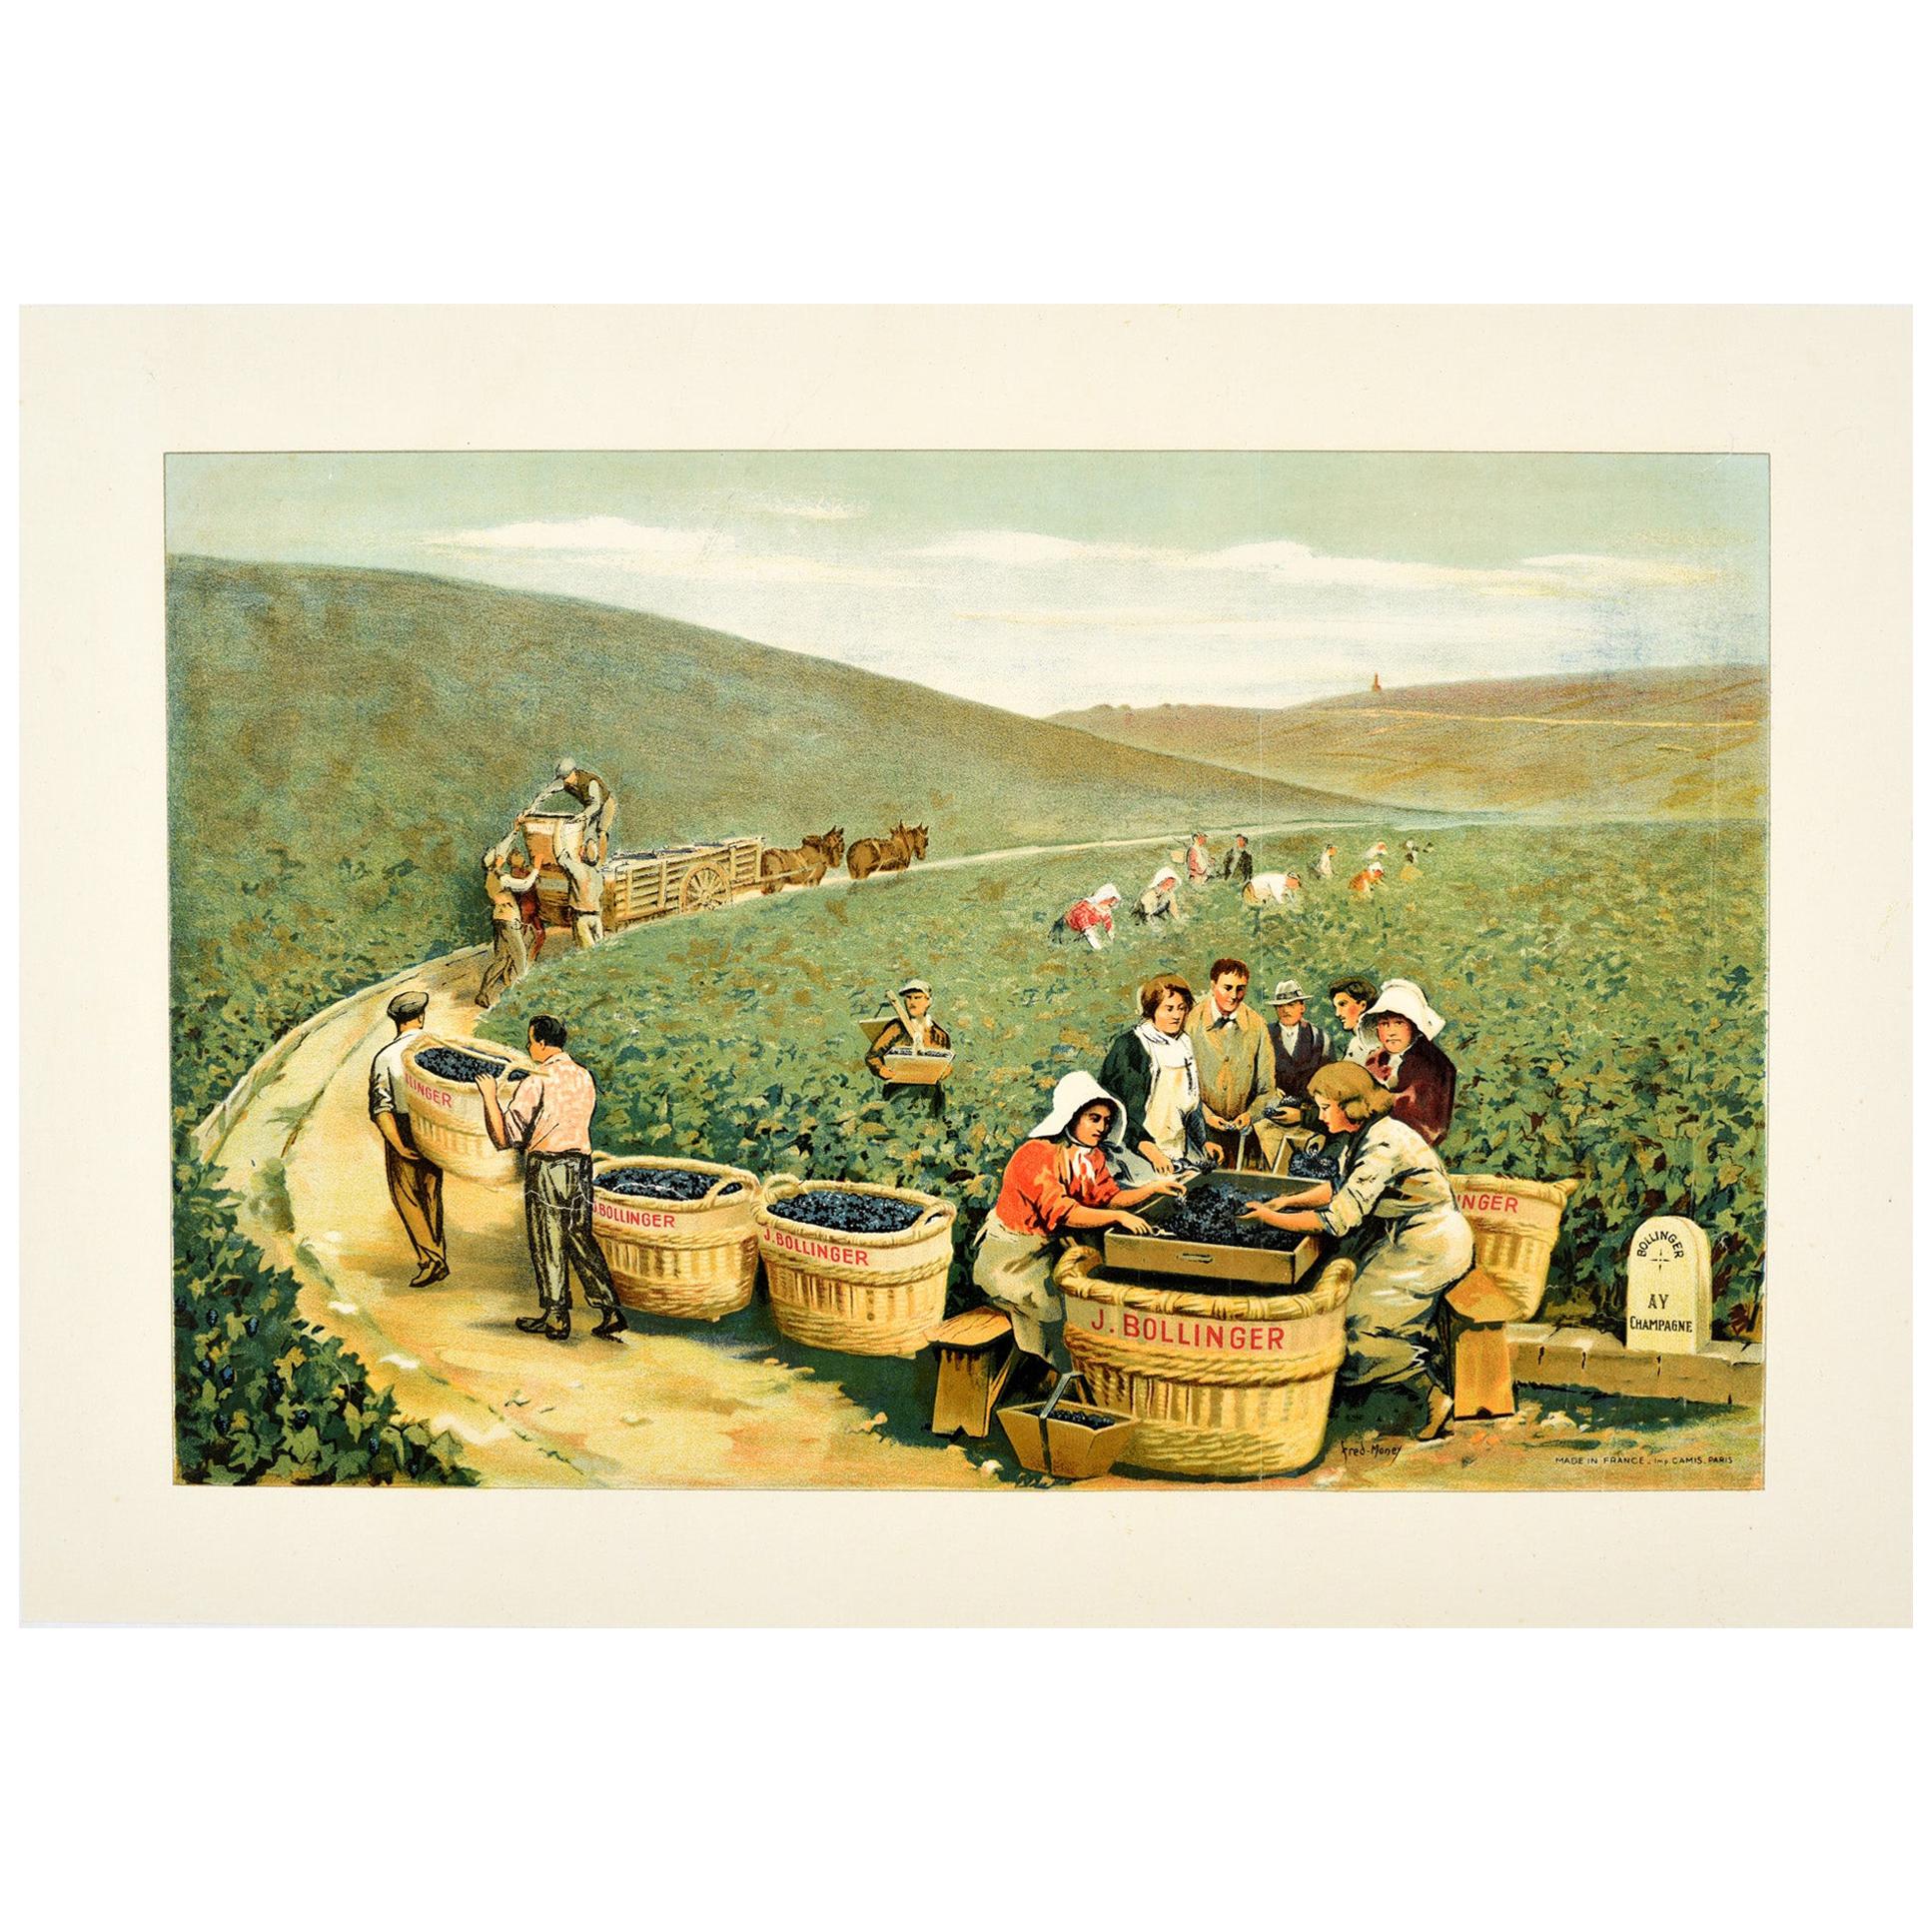 Original Antique J. Bollinger Champagne Poster Sparkling Wine Vineyard Ay France